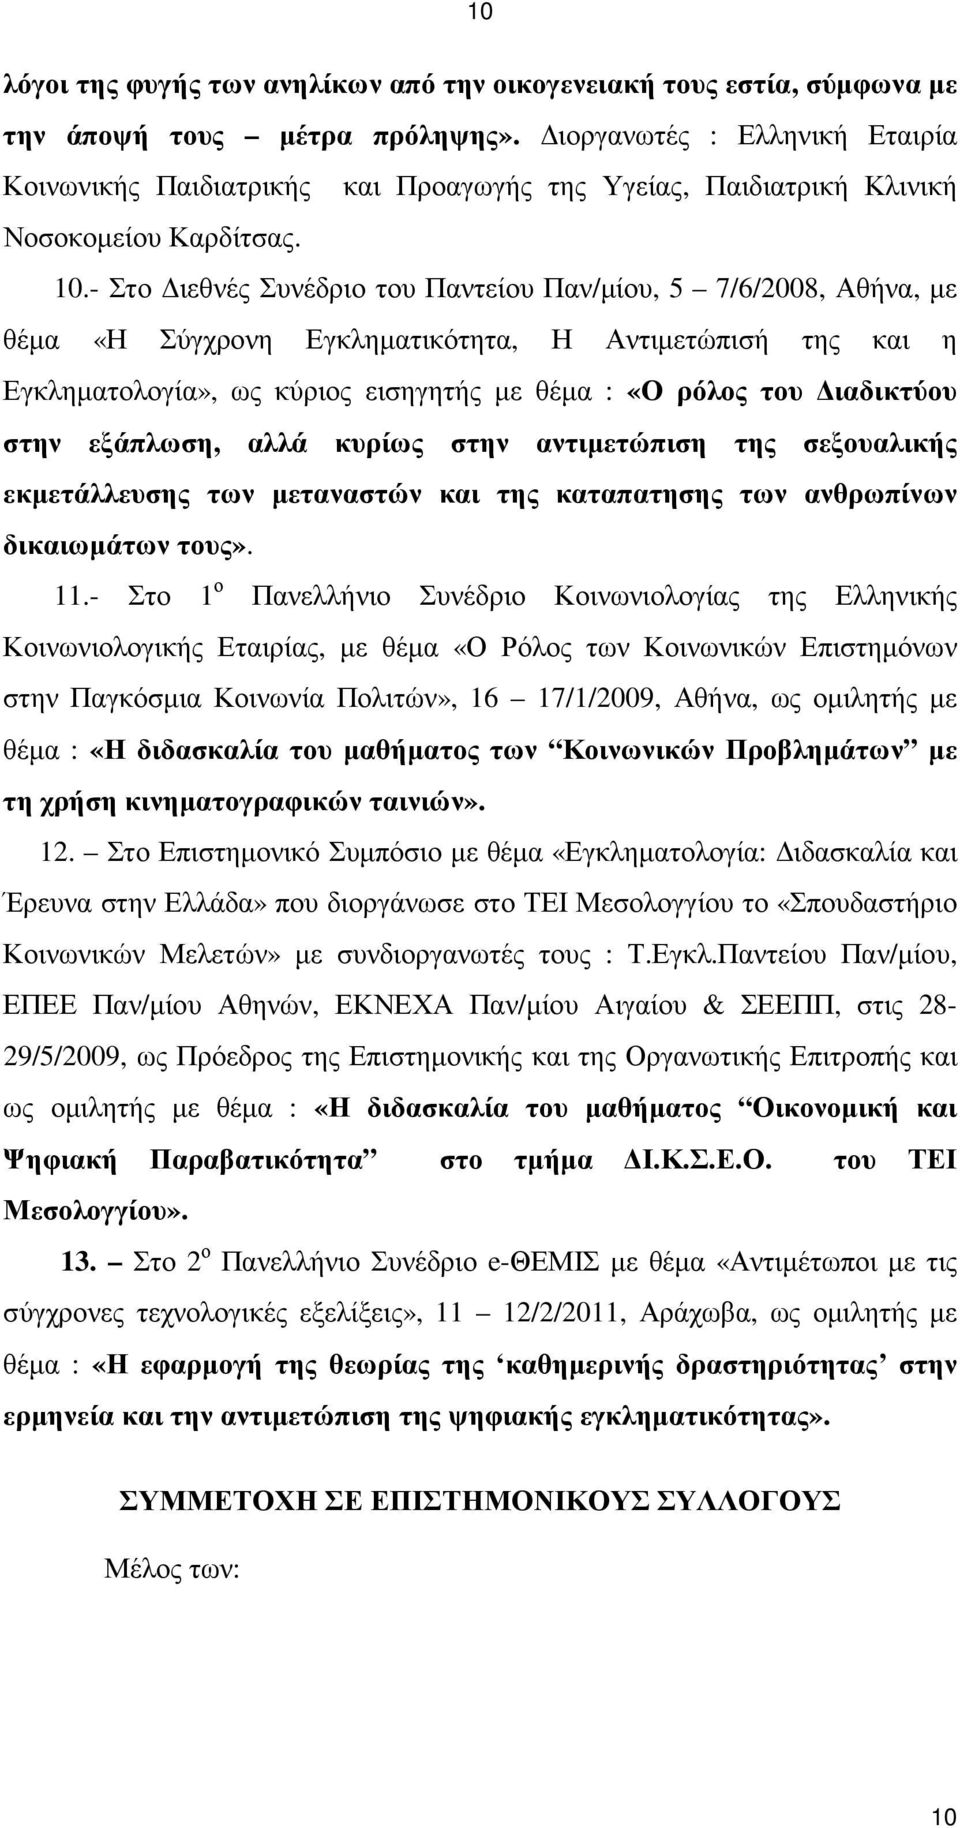 - Στο ιεθνές Συνέδριο του Παντείου Παν/µίου, 5 7/6/2008, Αθήνα, µε θέµα «Η Σύγχρονη Εγκληµατικότητα, Η Αντιµετώπισή της και η Εγκληµατολογία», ως κύριος εισηγητής µε θέµα : «Ο ρόλος του ιαδικτύου